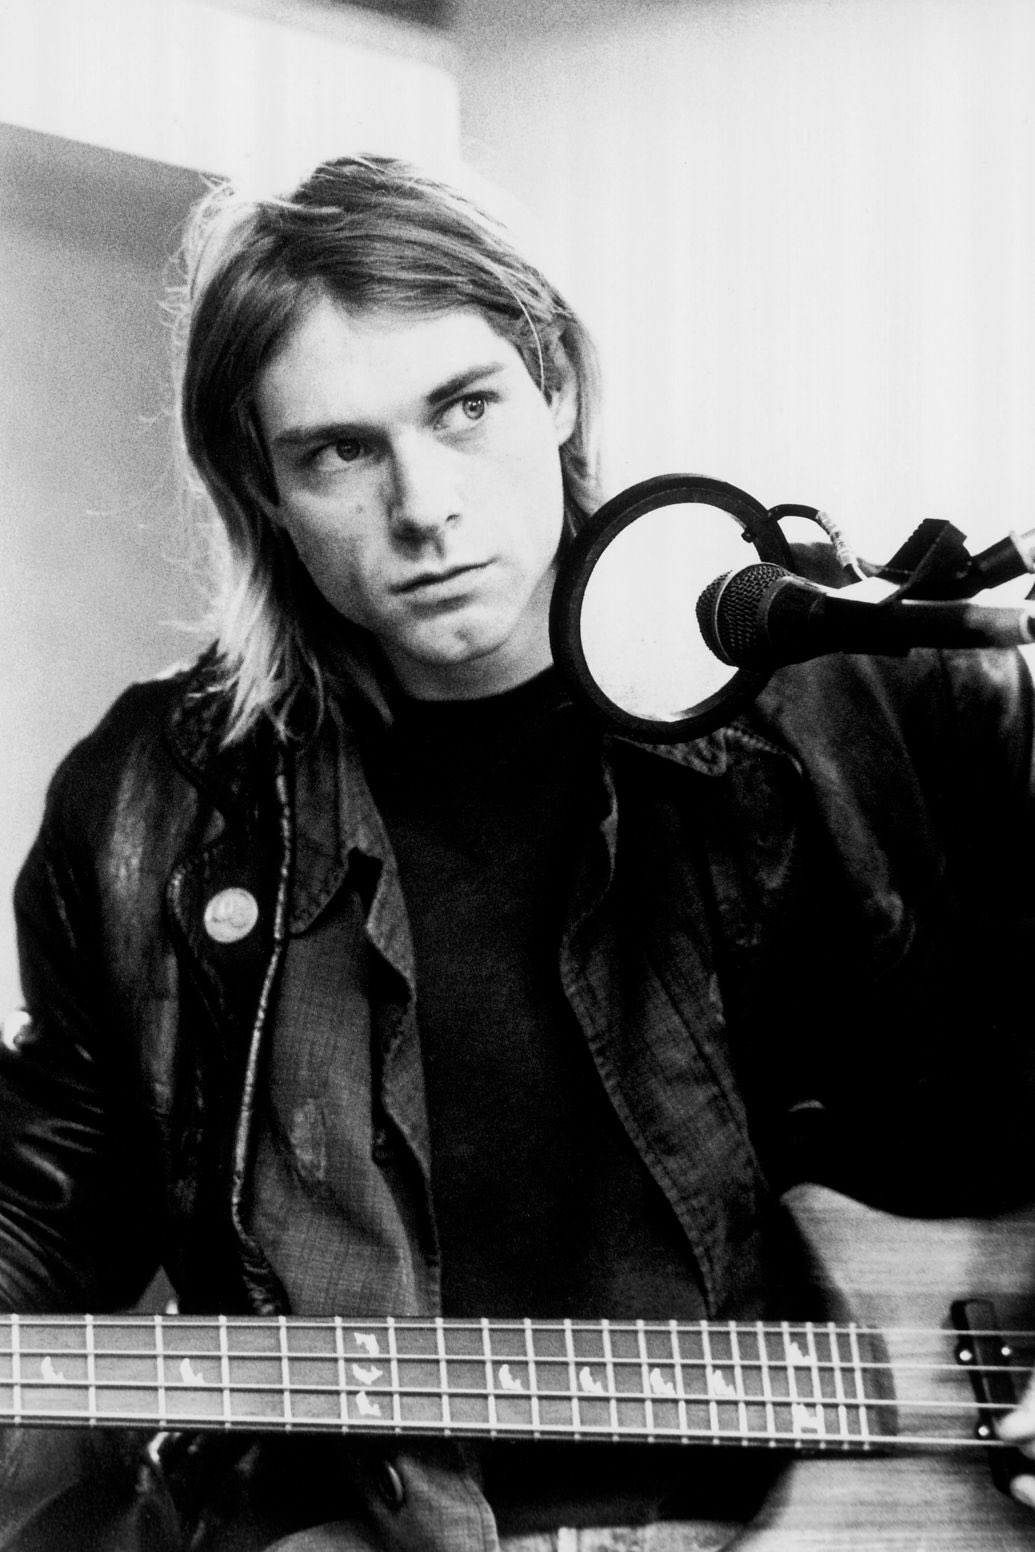 Happy bday Kurt cobain ily 